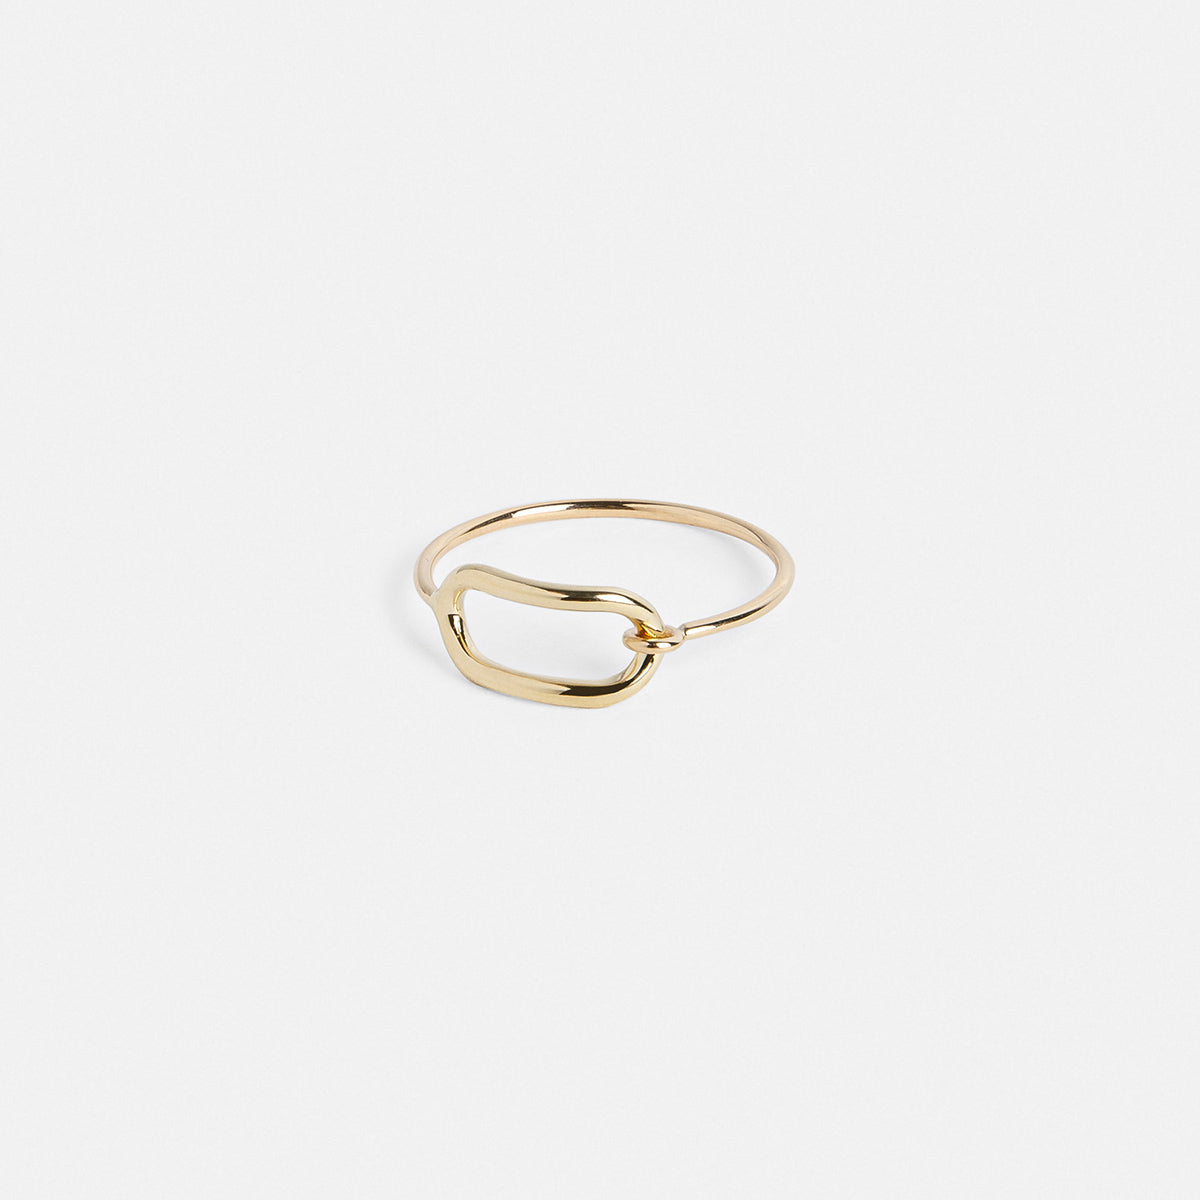 Vel Unisex Ring in 14k Gold by SHW Fine Jewelry